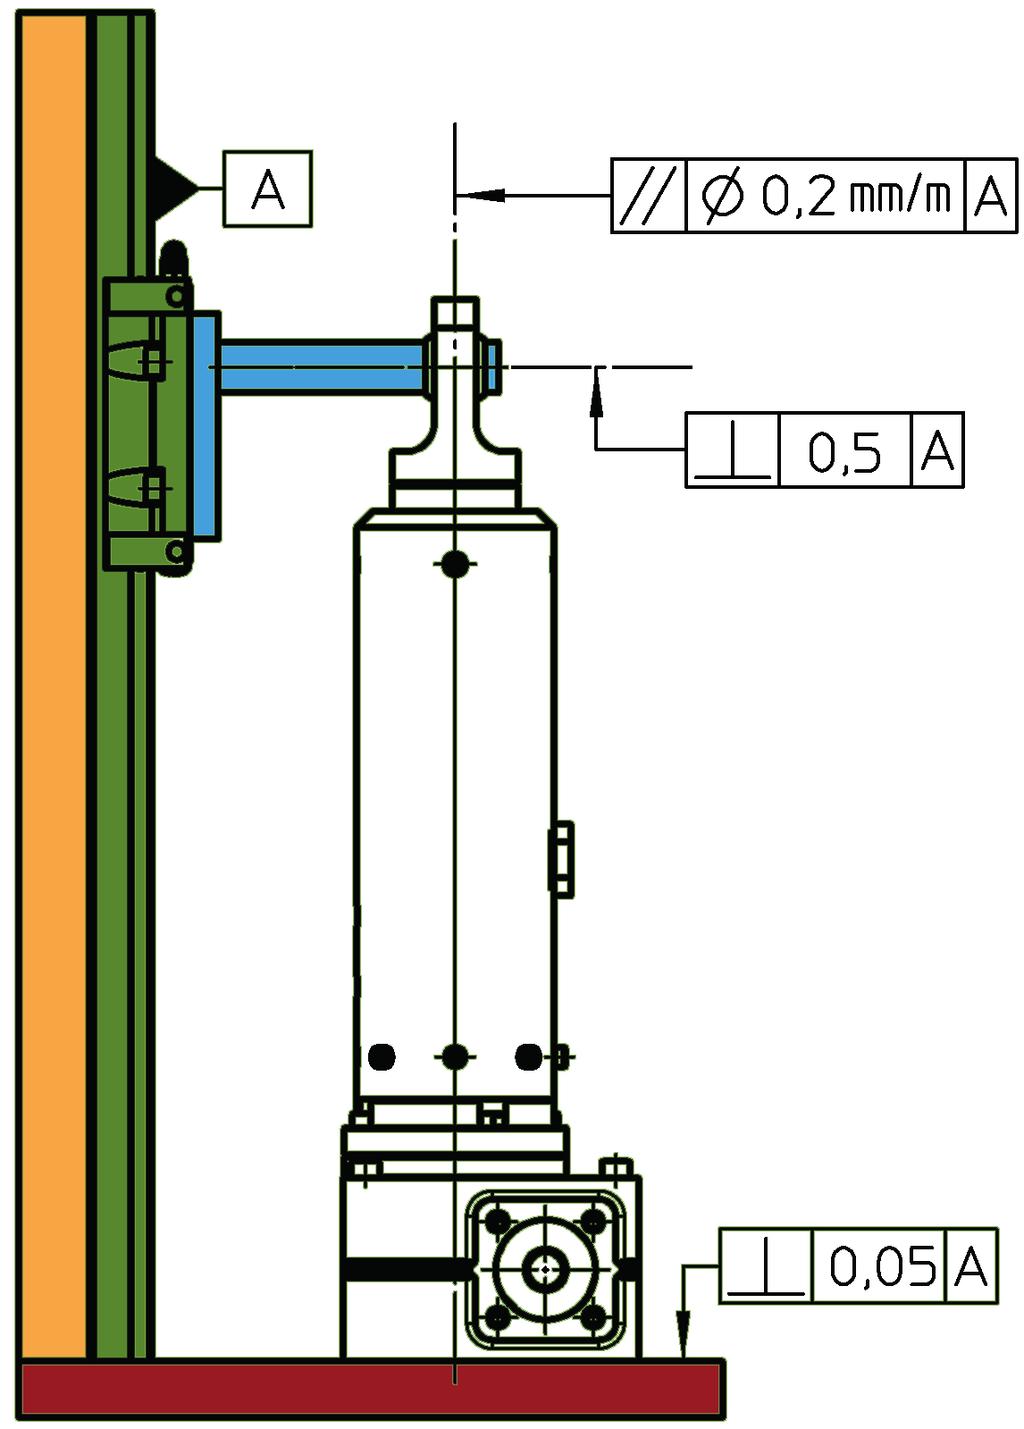 Gewindeanschluss (Bild 2): Vorzugsweise zur Befestigung eigener Anbauteile verwenden. Bei Direktverschraubung muss das Getriebe bei Montage ausgerichtet werden können.